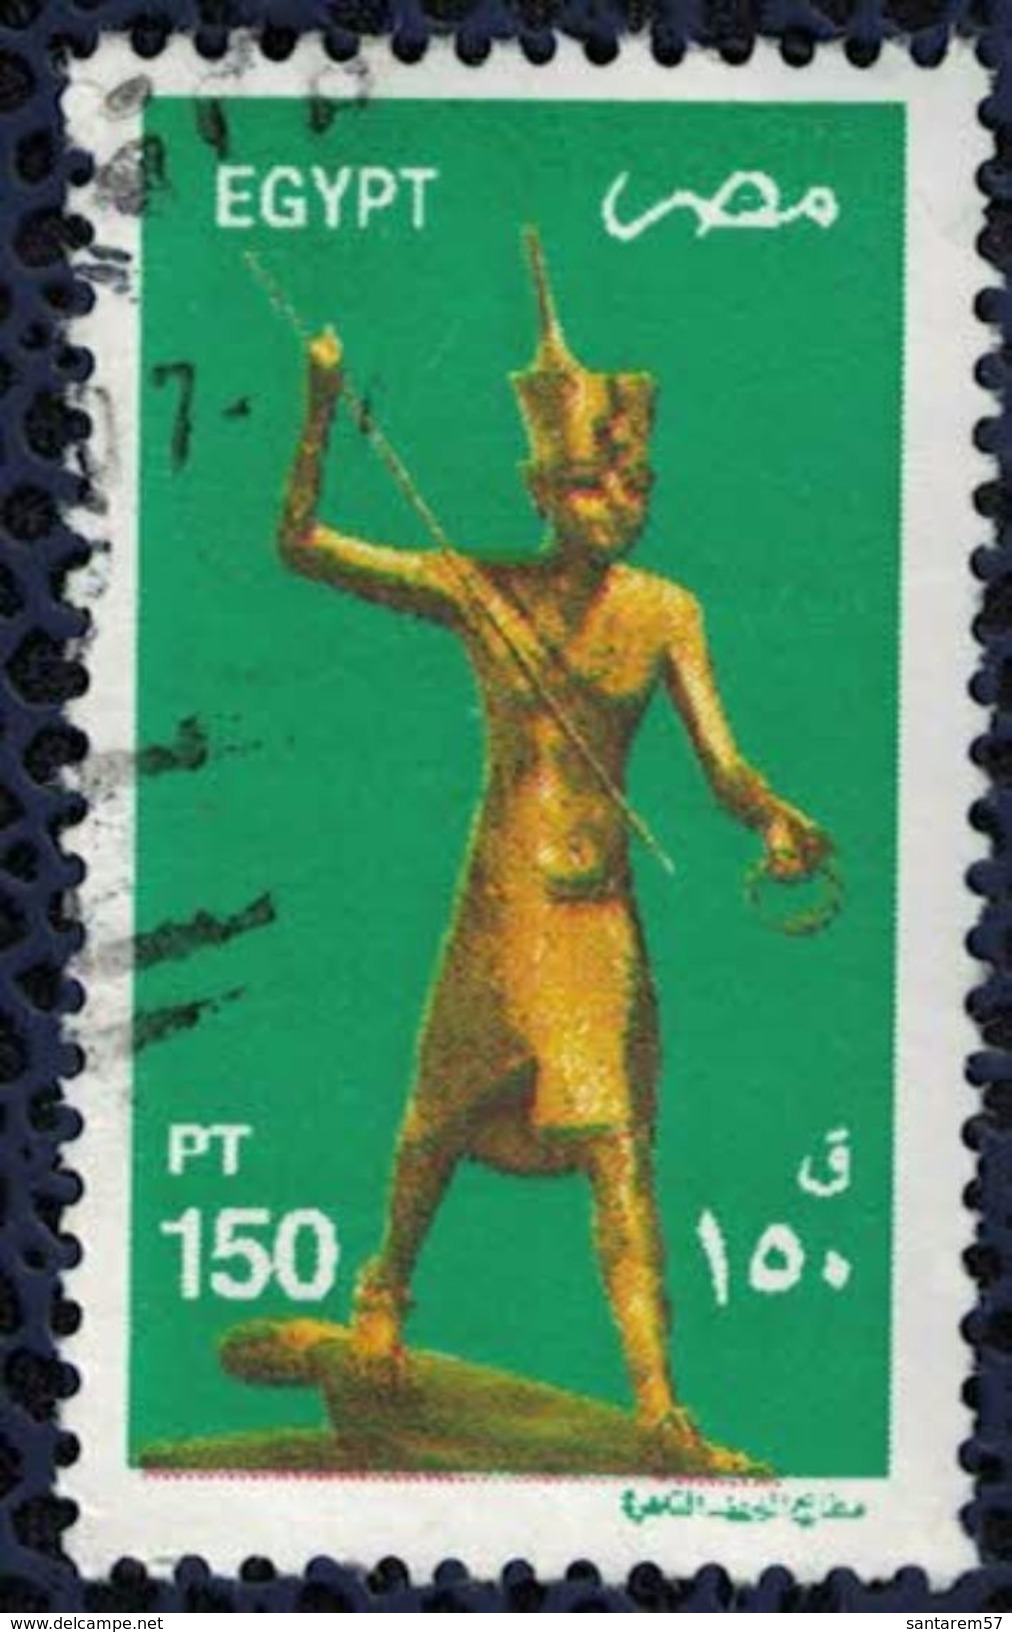 Egypte 2002 Oblitéré Used Figurine En Bois Doré De Toutankhamon - Oblitérés